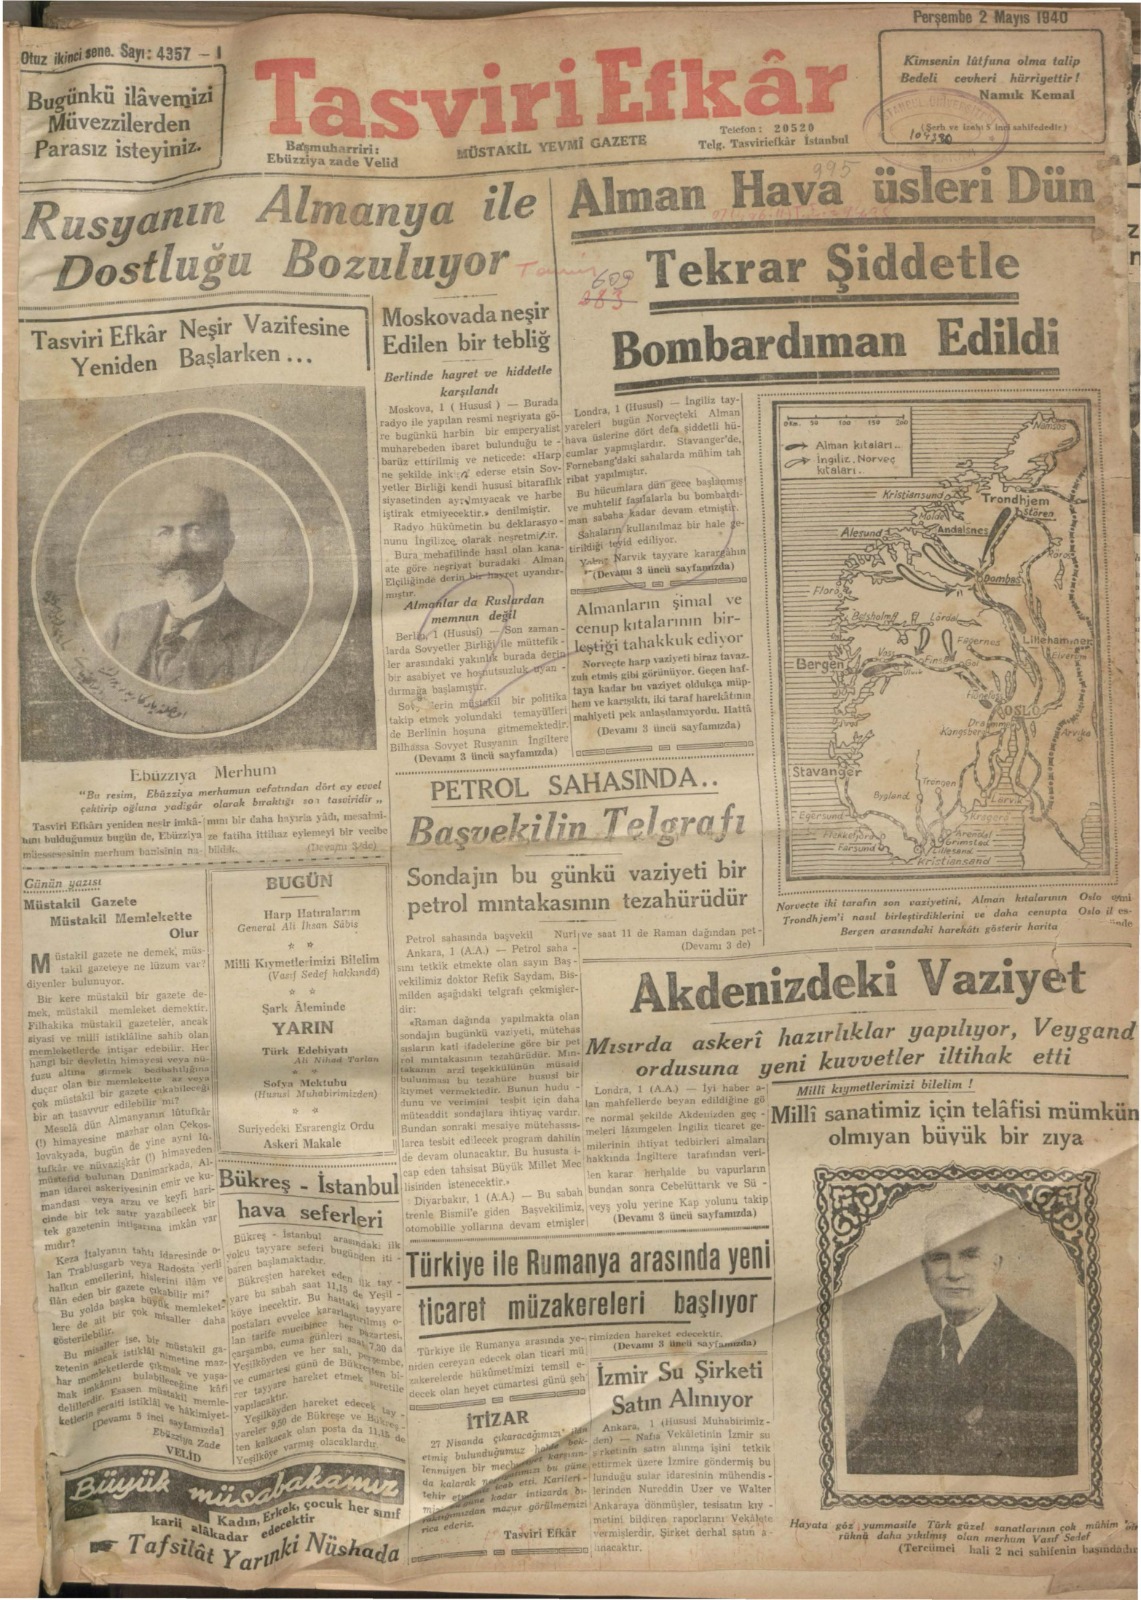 tarihe isik tutan arsiv 1928 1942 yillarindan 18422 cilt gazete paylasima acildi atlas